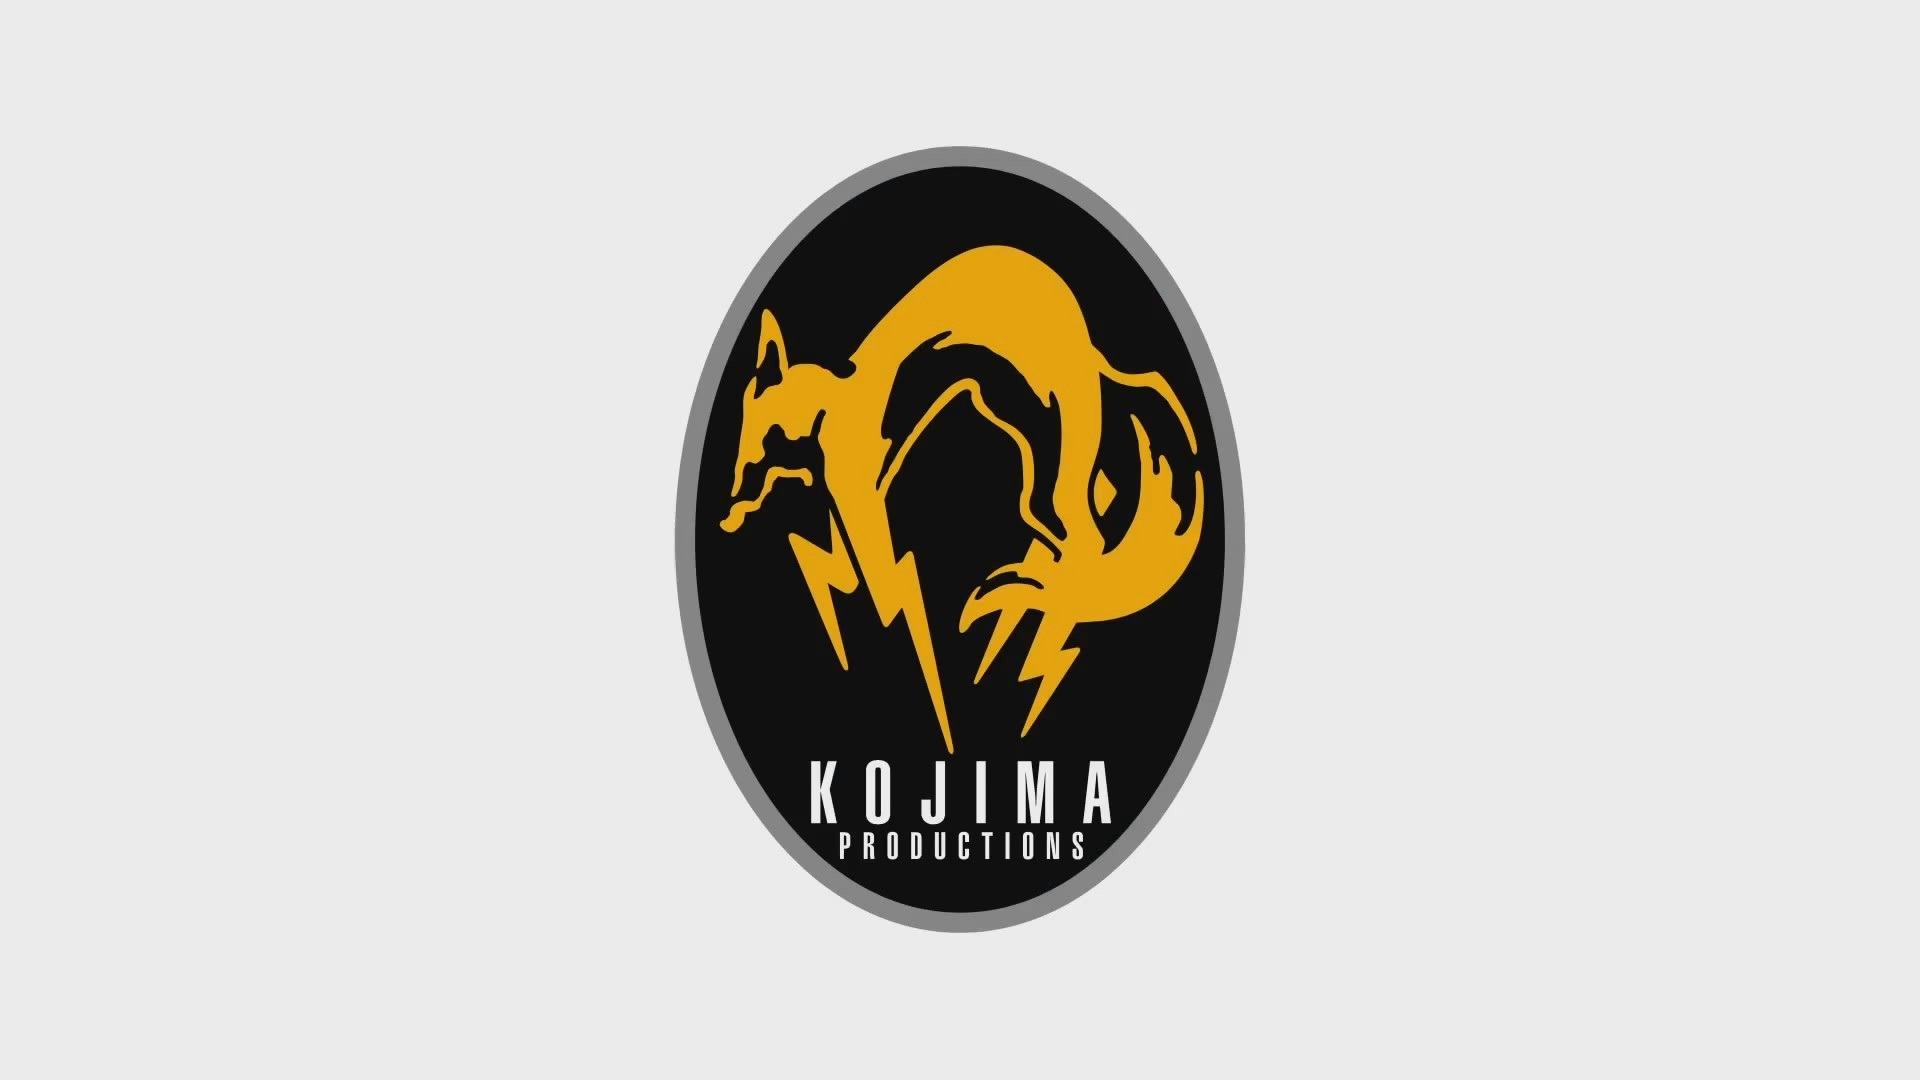 Kojima-Productions-Metal-Gear-Solid-V-WideWallpapersHD-1920x1080.jpg